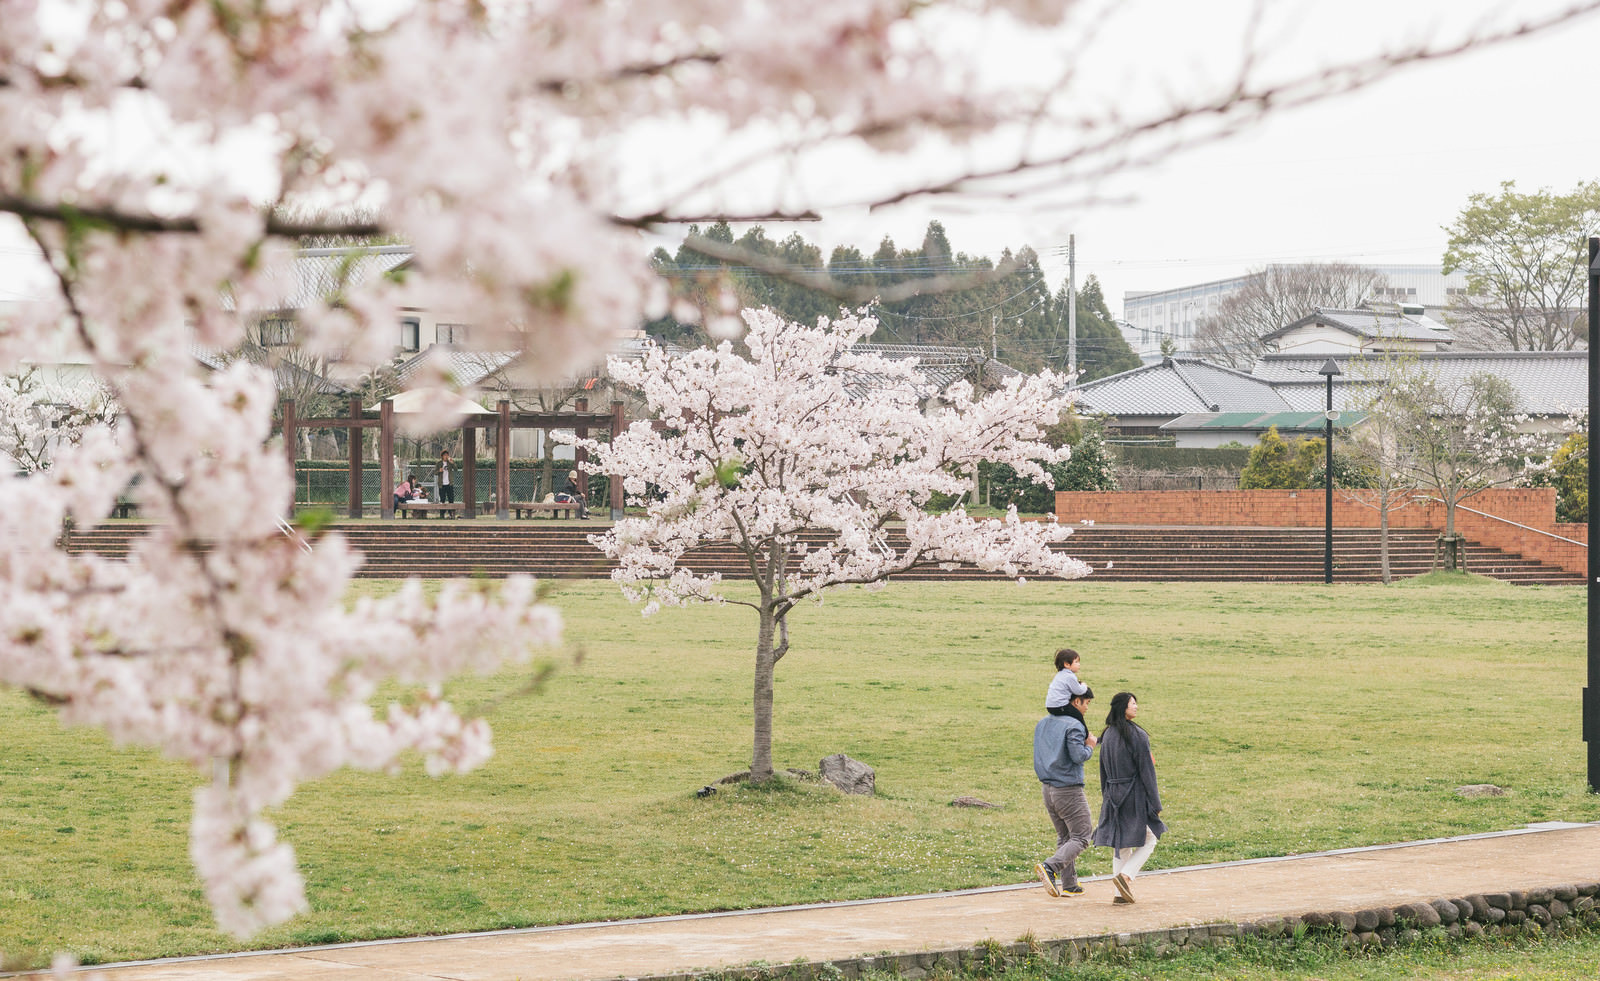 「桜の季節に散歩する家族 | フリー素材のぱくたそ」の写真